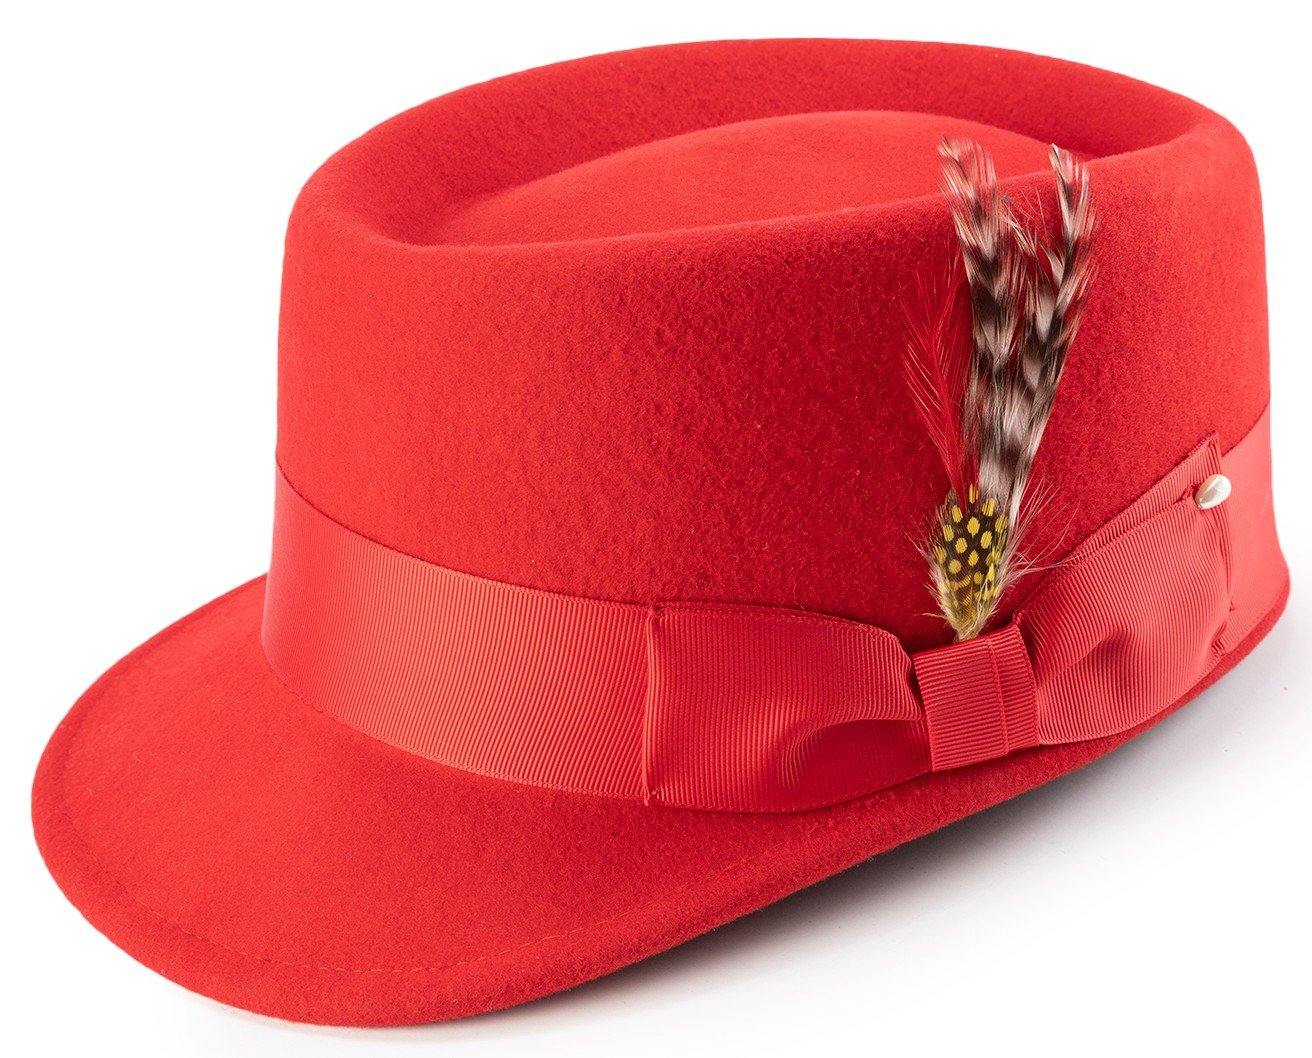 Montique Men's Red Color Round Crown Shape Wool Felt Hat H-59 - Suits & More